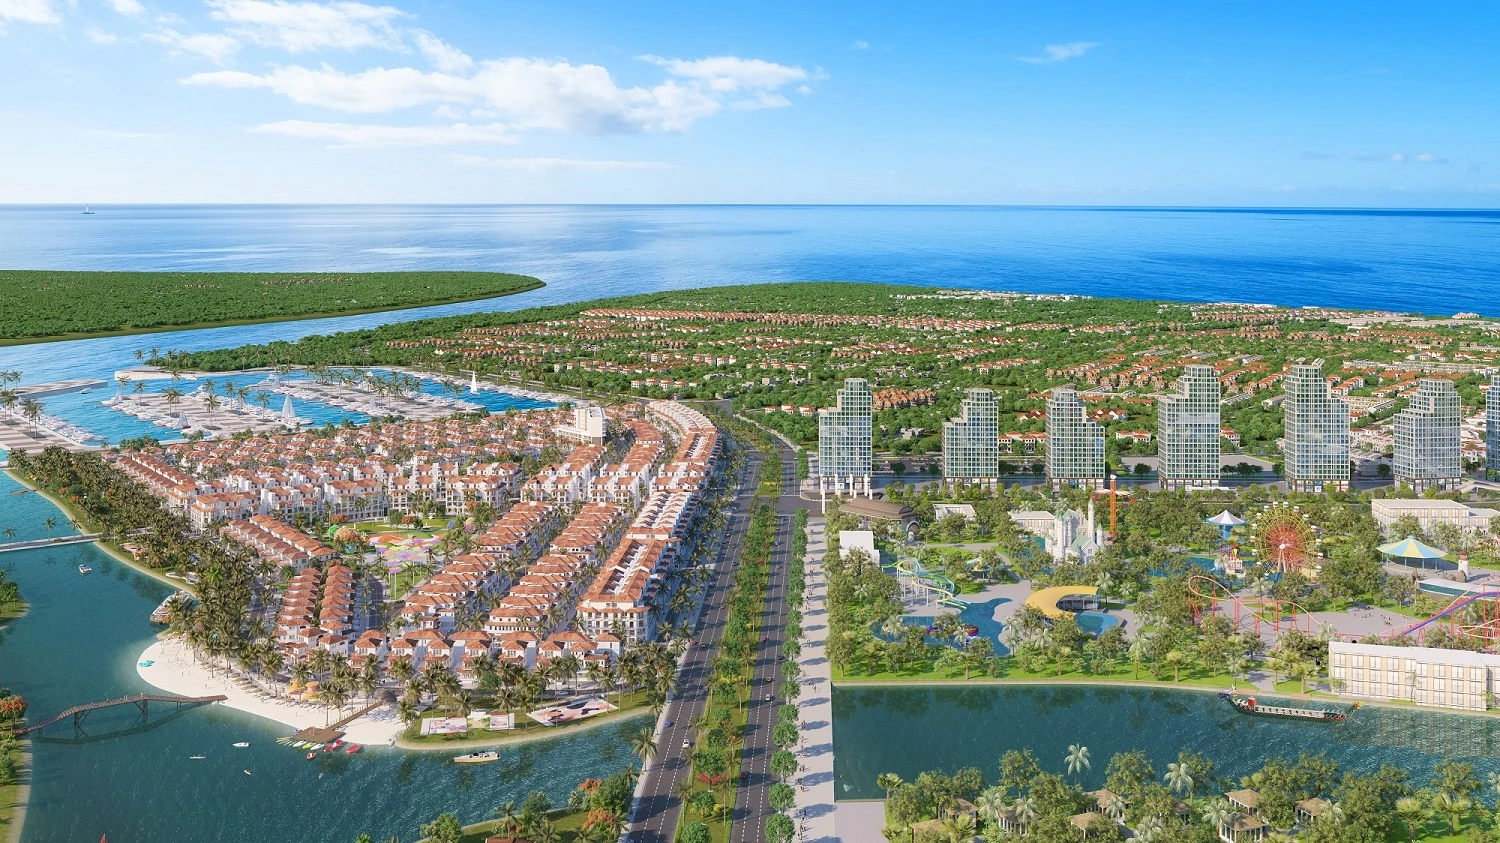 Sun Group sẽ đánh thức dòng sông Đơ tại Sầm Sơn và kiến tạo thành phố nghỉ dưỡng đa sắc màu kế sông kề biển. Ảnh phối cảnh minh họa.